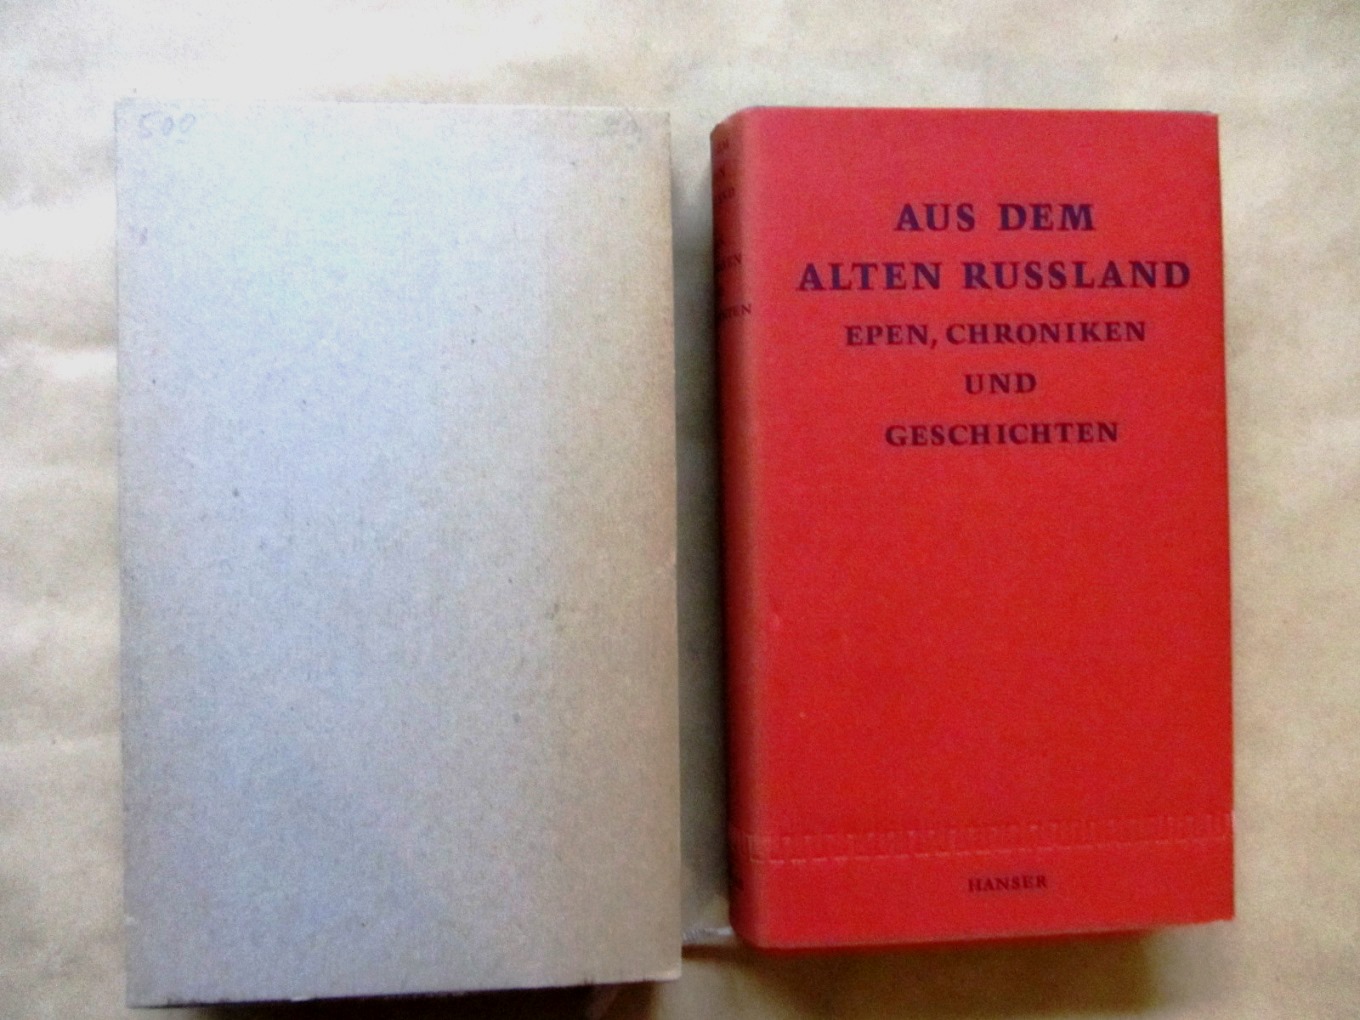 Zenkovsky, Serge A. (Hrsg.):  Aus dem alten Rußland. Epen, Chronikenund Geschichten. Deutsch von Hans Baumann (Gedichte) und Elisabeth Kottmeier (Prosa). 